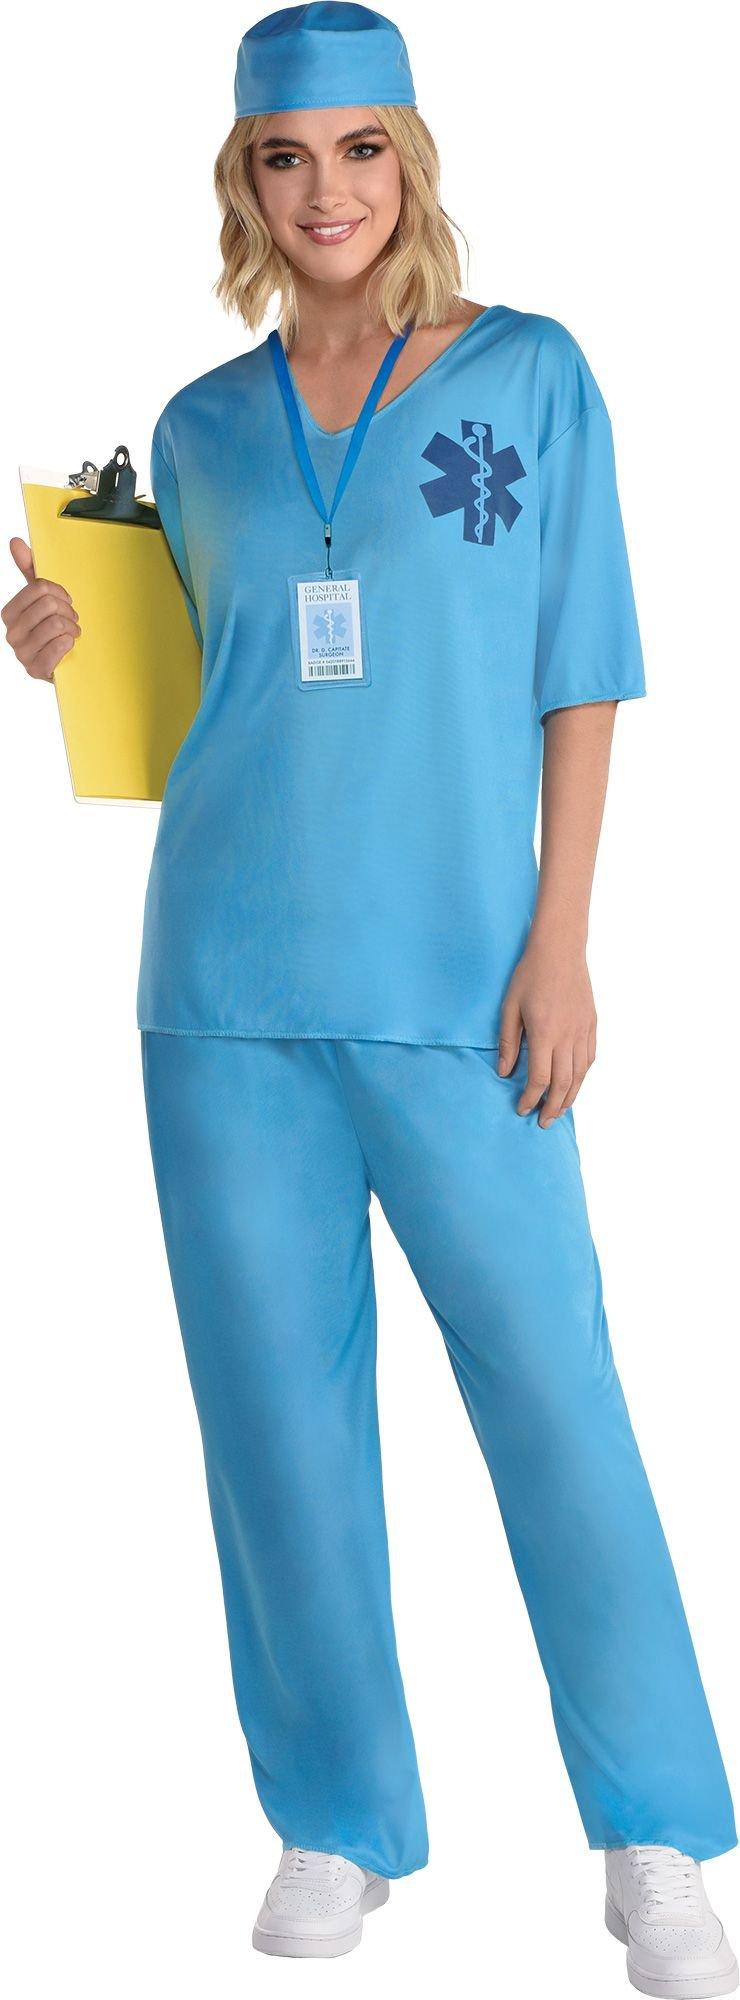 Women's ER Doctor Costume